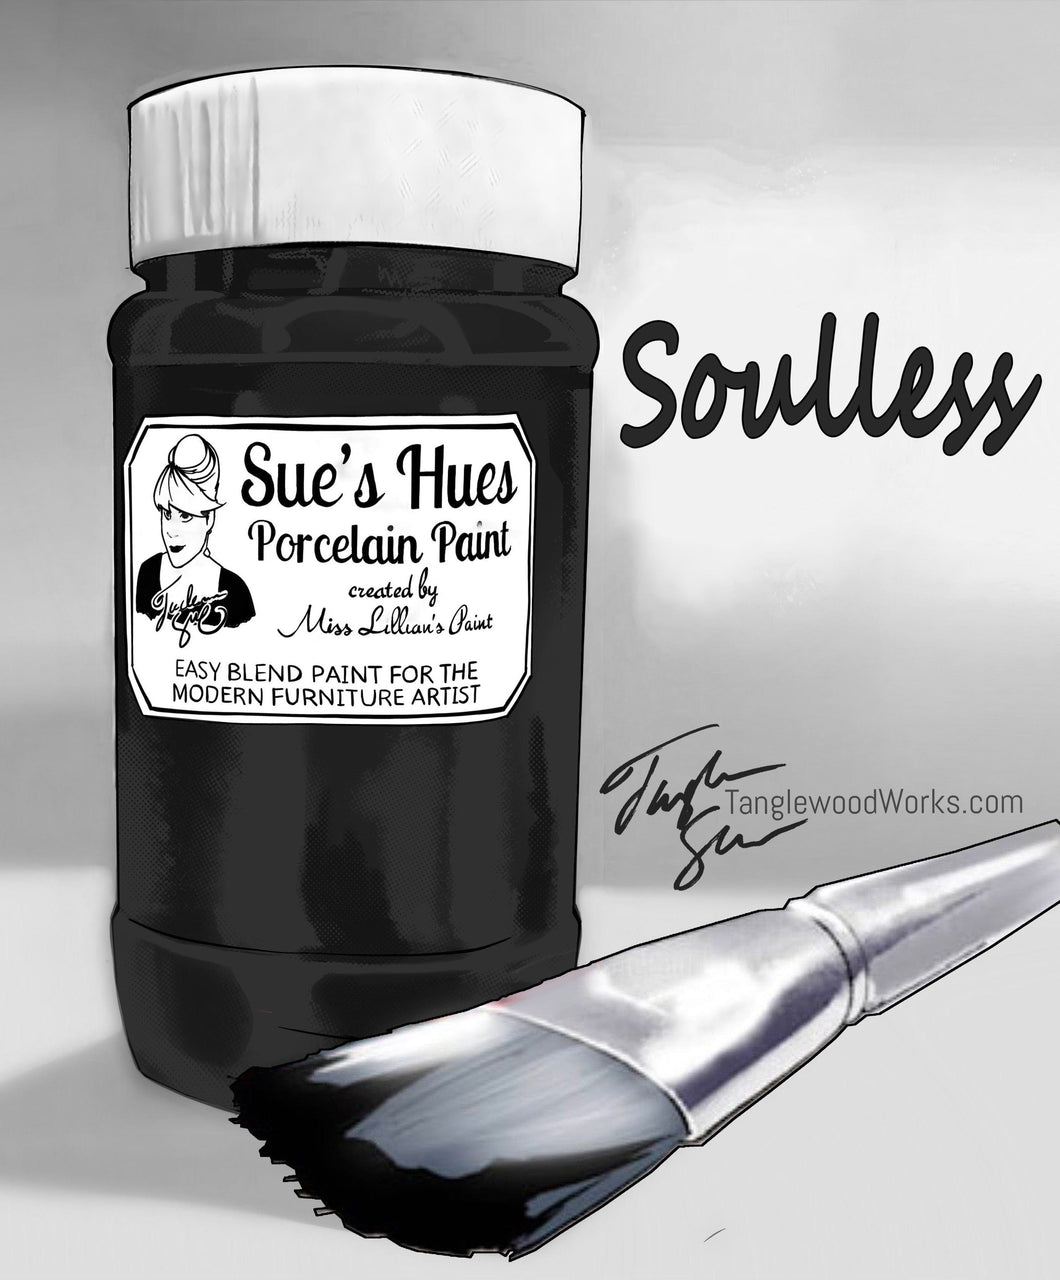 Sue's Hues Porcelain Paint: Soulless (black, grey)